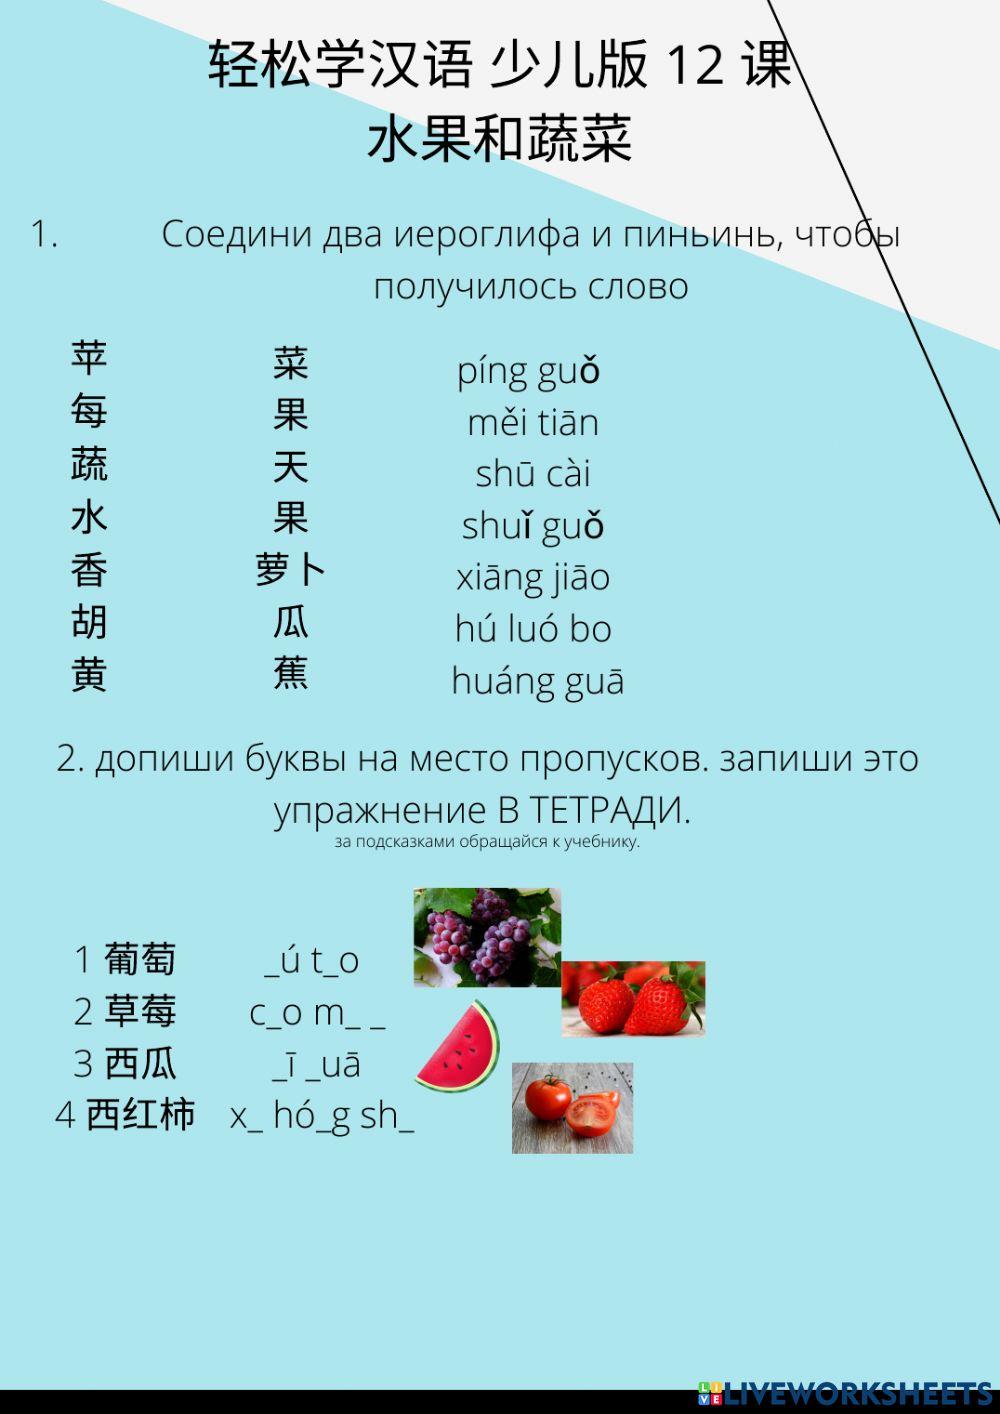 轻松学汉语 少儿版 12 课 水果和蔬菜 fruits and vegetables